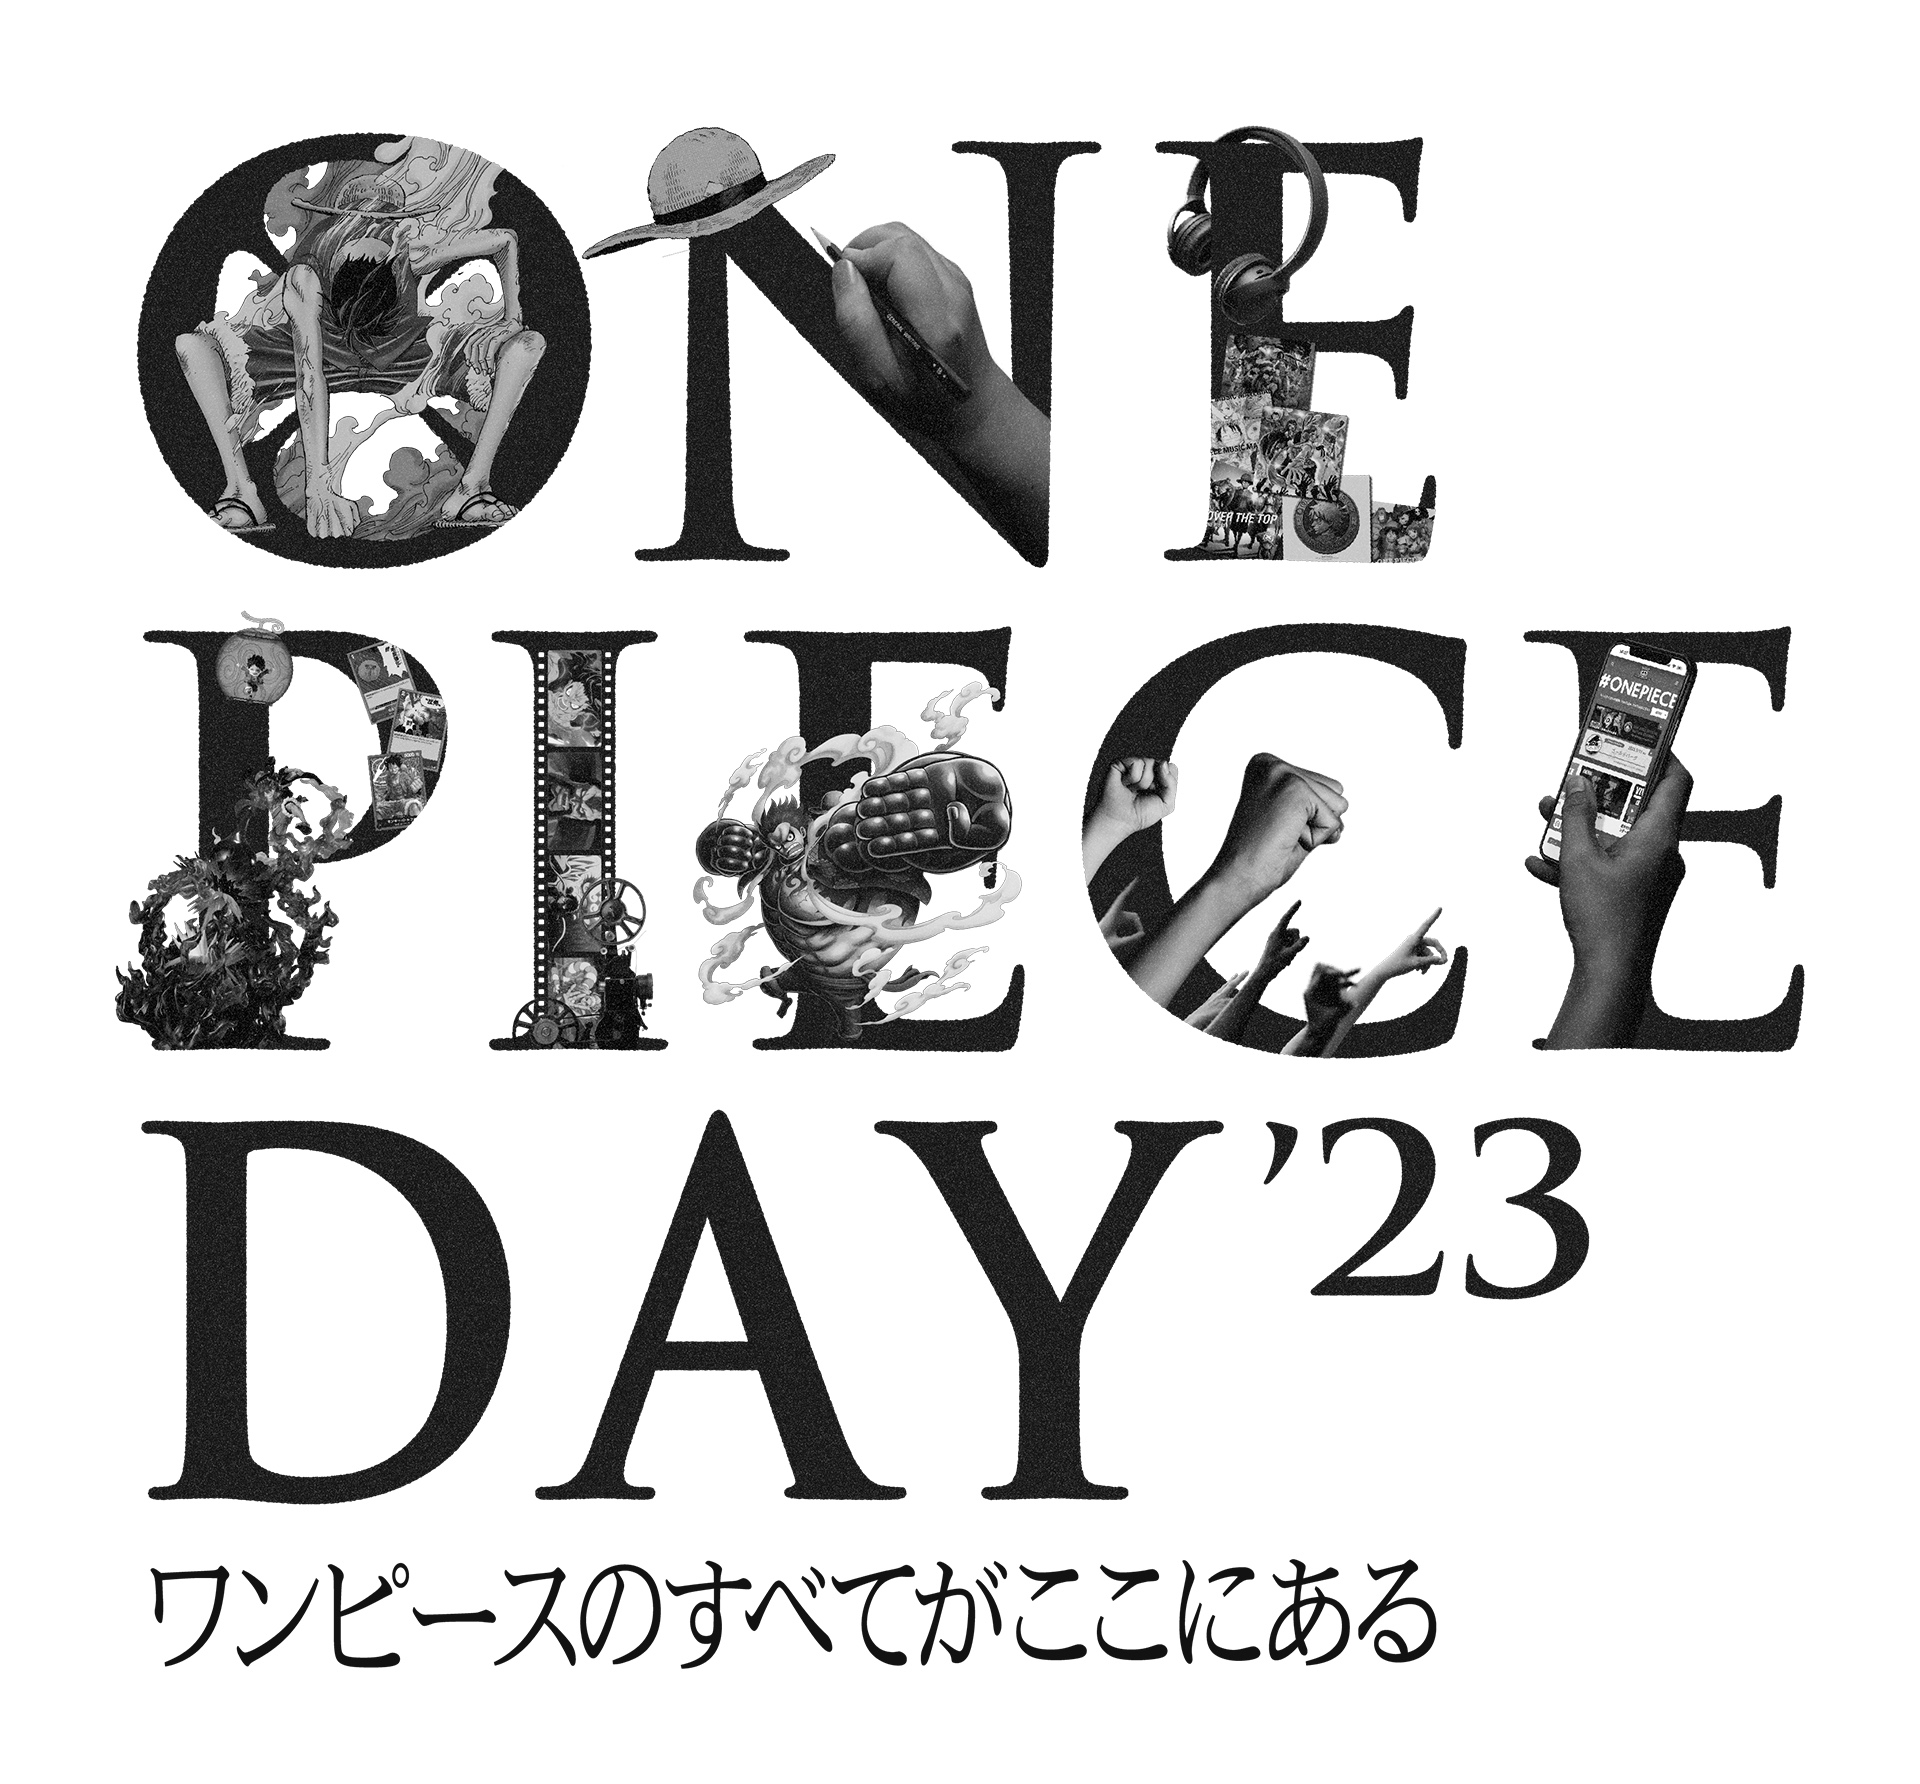 2日間イベント「ONE PIECE DAY'23」、東京ビッグサイト入場チケットの ...